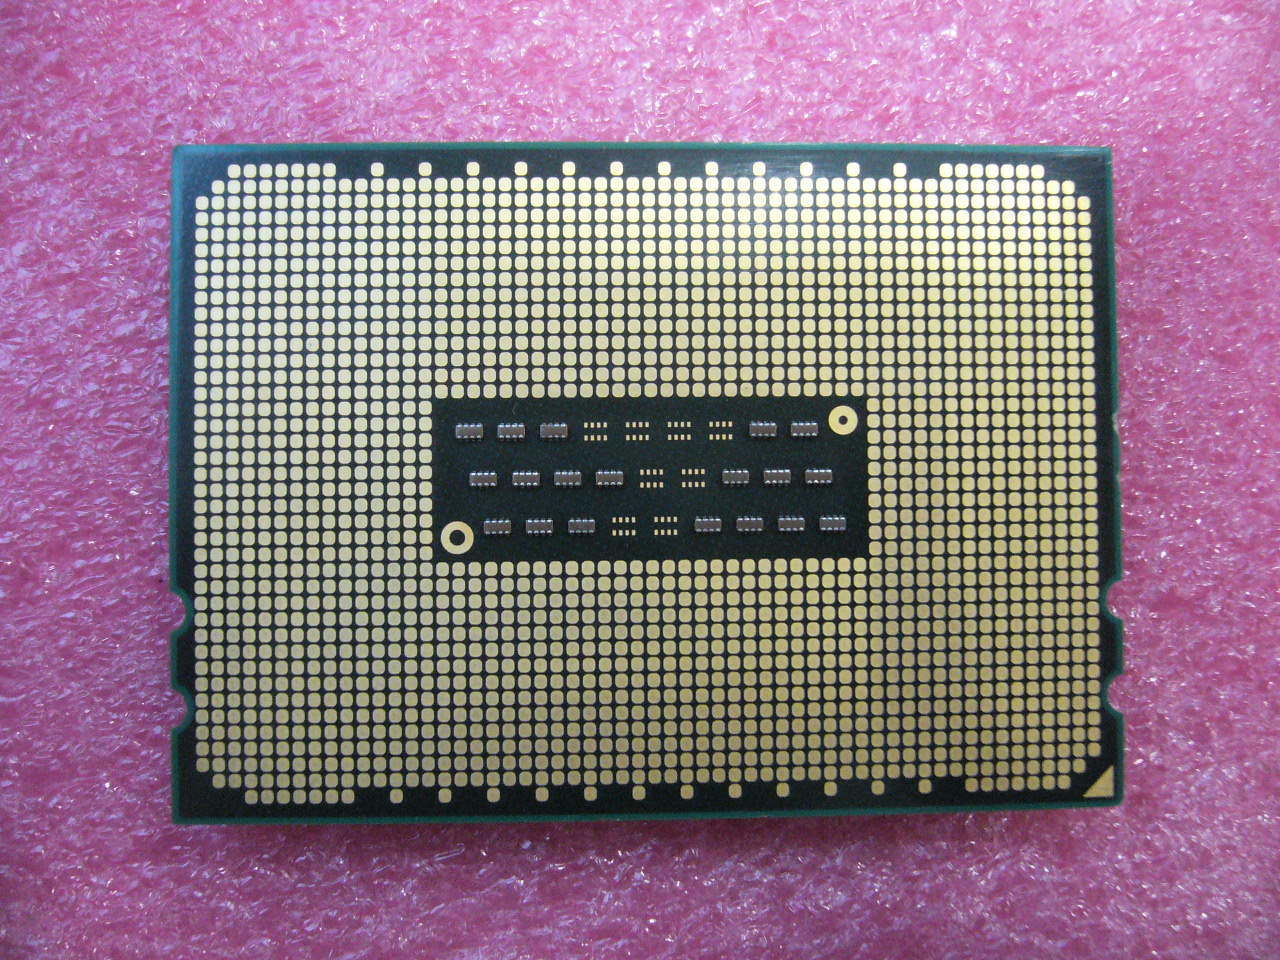 QTY 1x AMD Opteron 6168 1.9 GHz Twelve Core (OS6168WKTCEGO) CPU Tested G34 - zum Schließen ins Bild klicken